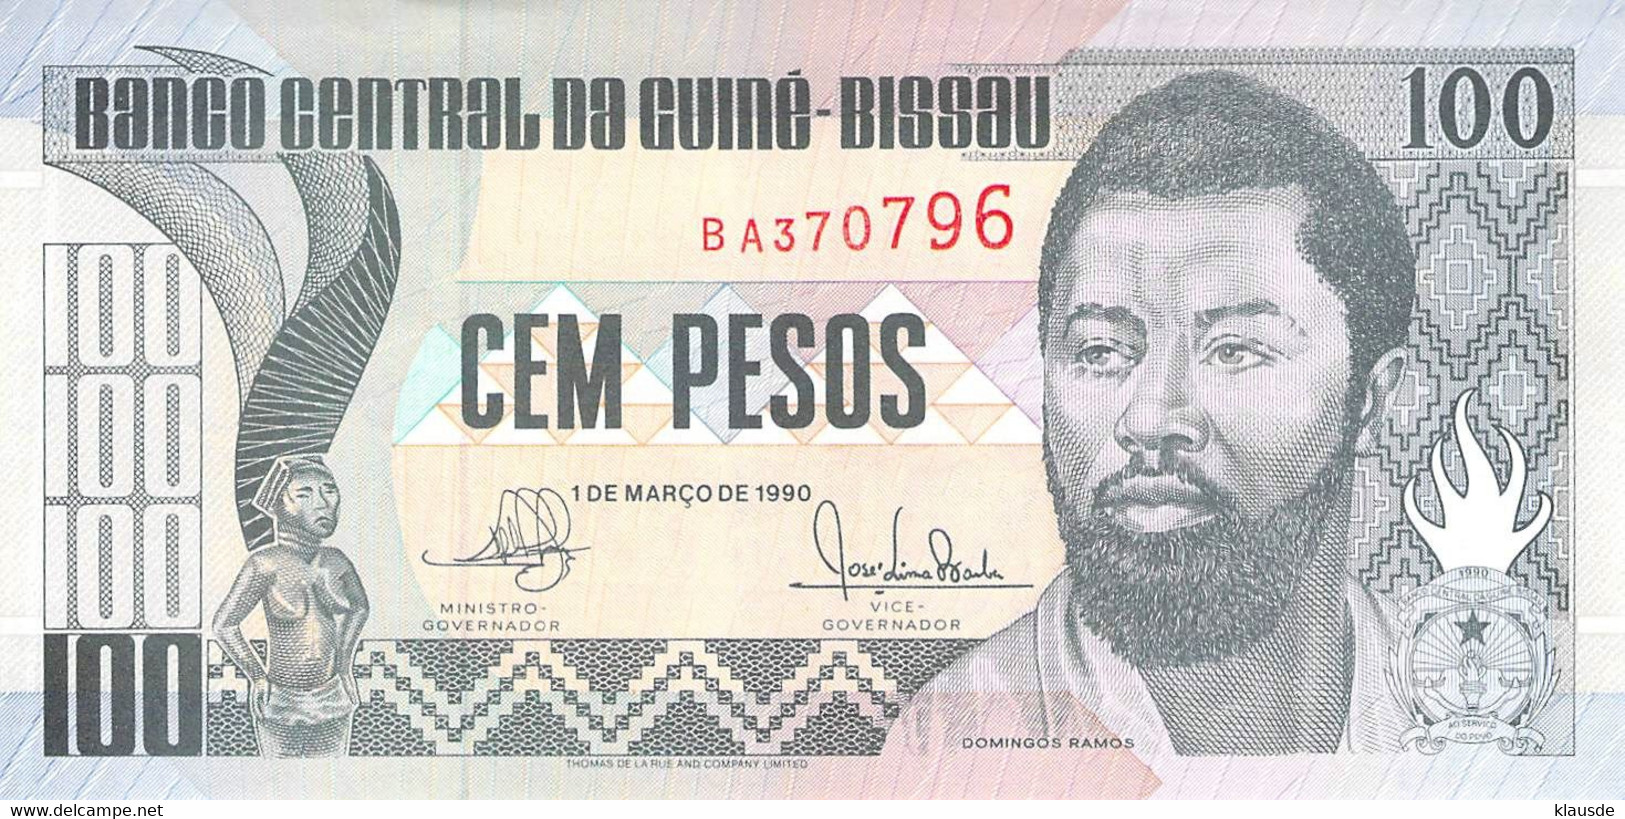 100 Pesos Guines-Bissau 1990 UNC - Guinea–Bissau